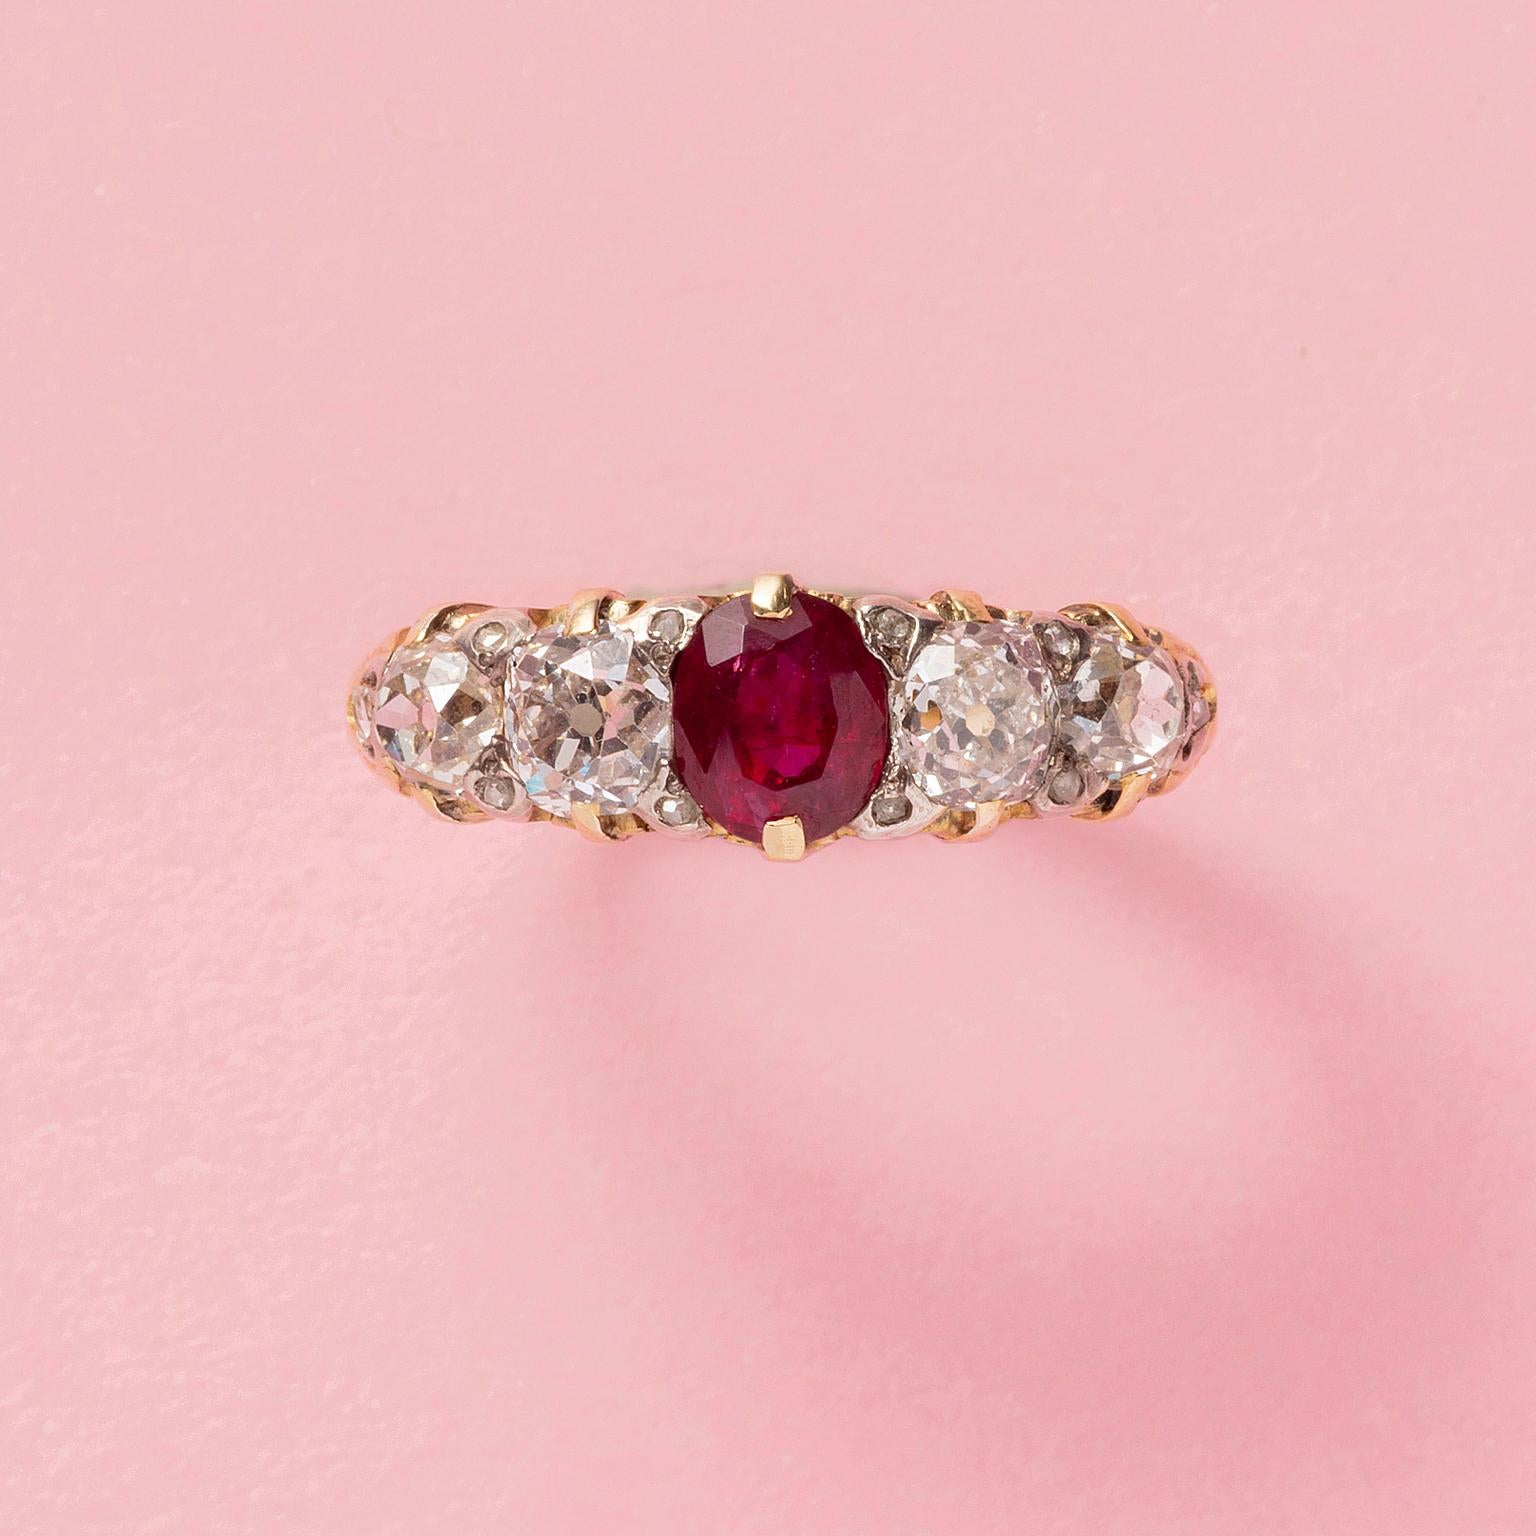 Une bague en or 18 carats sertie d'un rubis de taille ovale (0,95 ct environ) avec de chaque côté deux diamants taille coussin et 10 petits diamants taille rose (1,54 ct environ au total), Angleterre, vers 1890.

poids : 4,42 grammes
taille de